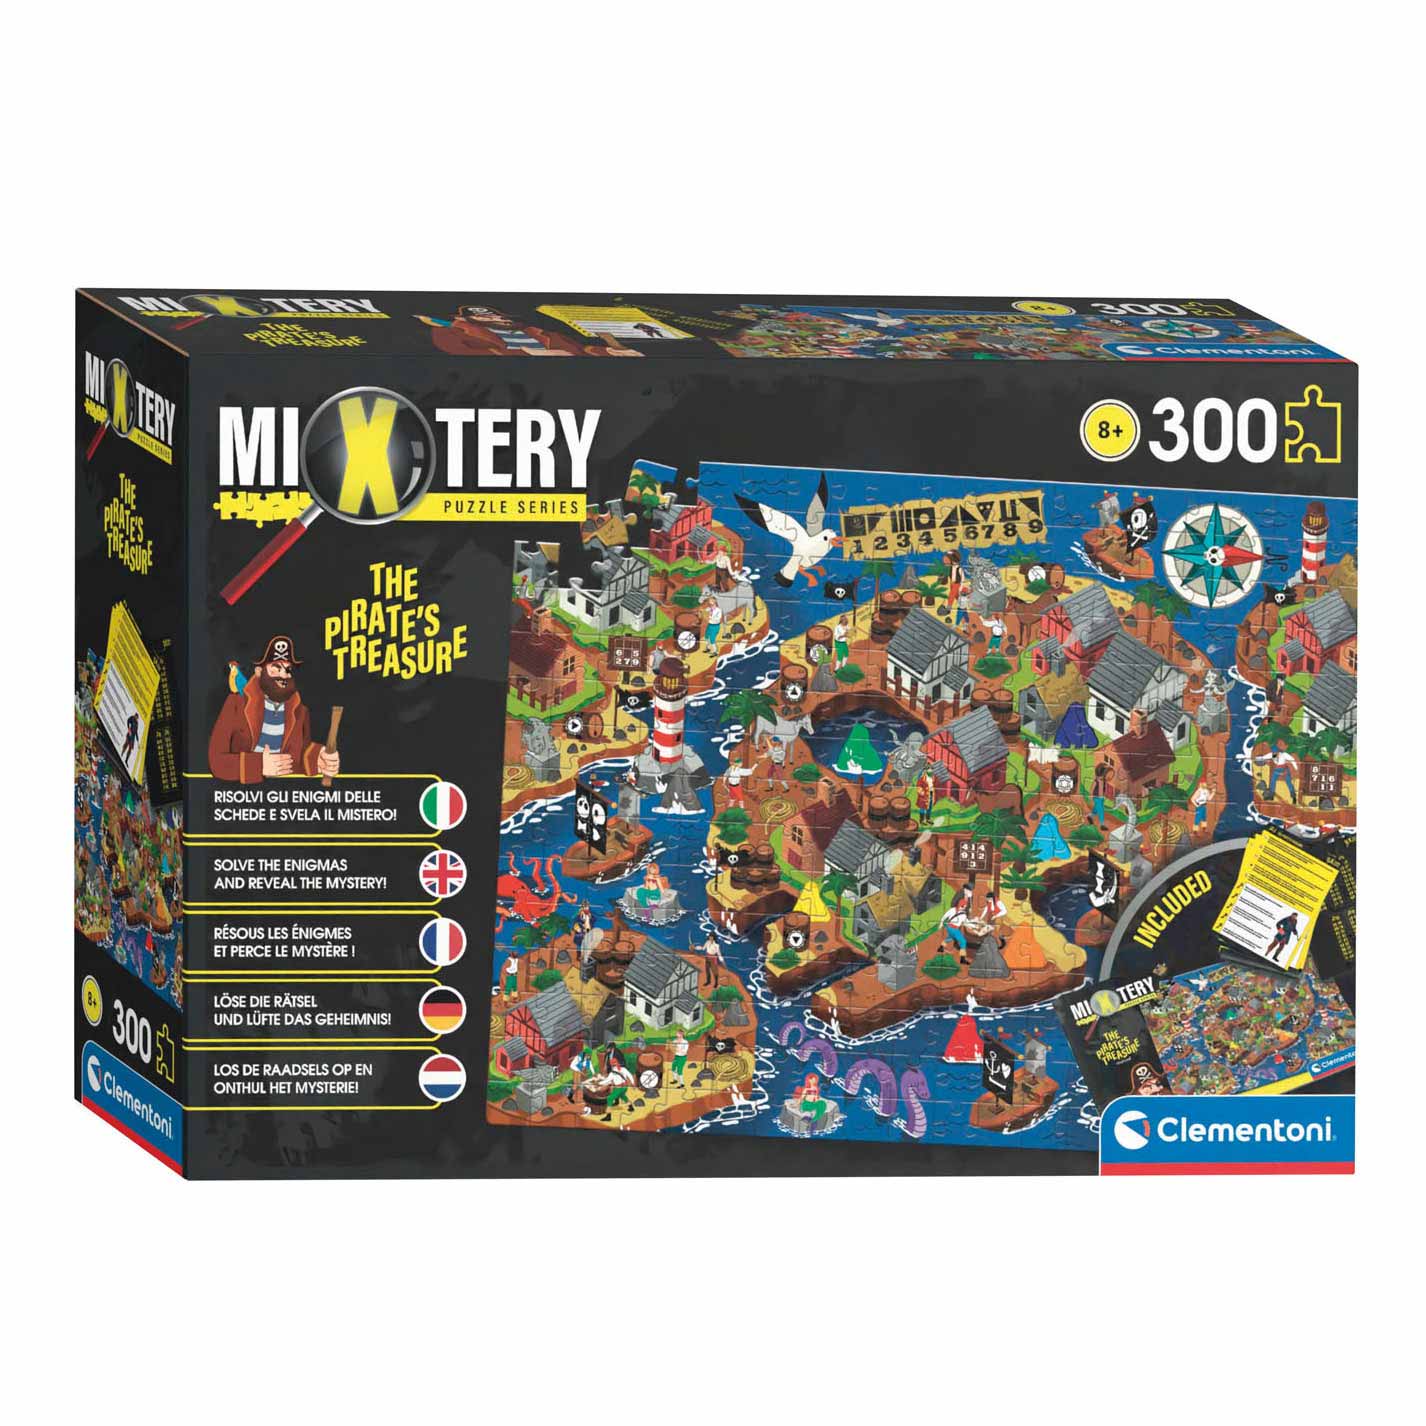 Mevrouw humor zijn Clementoni Mystery Puzzle Pirate Treasure, 300pcs. | Thimble Toys